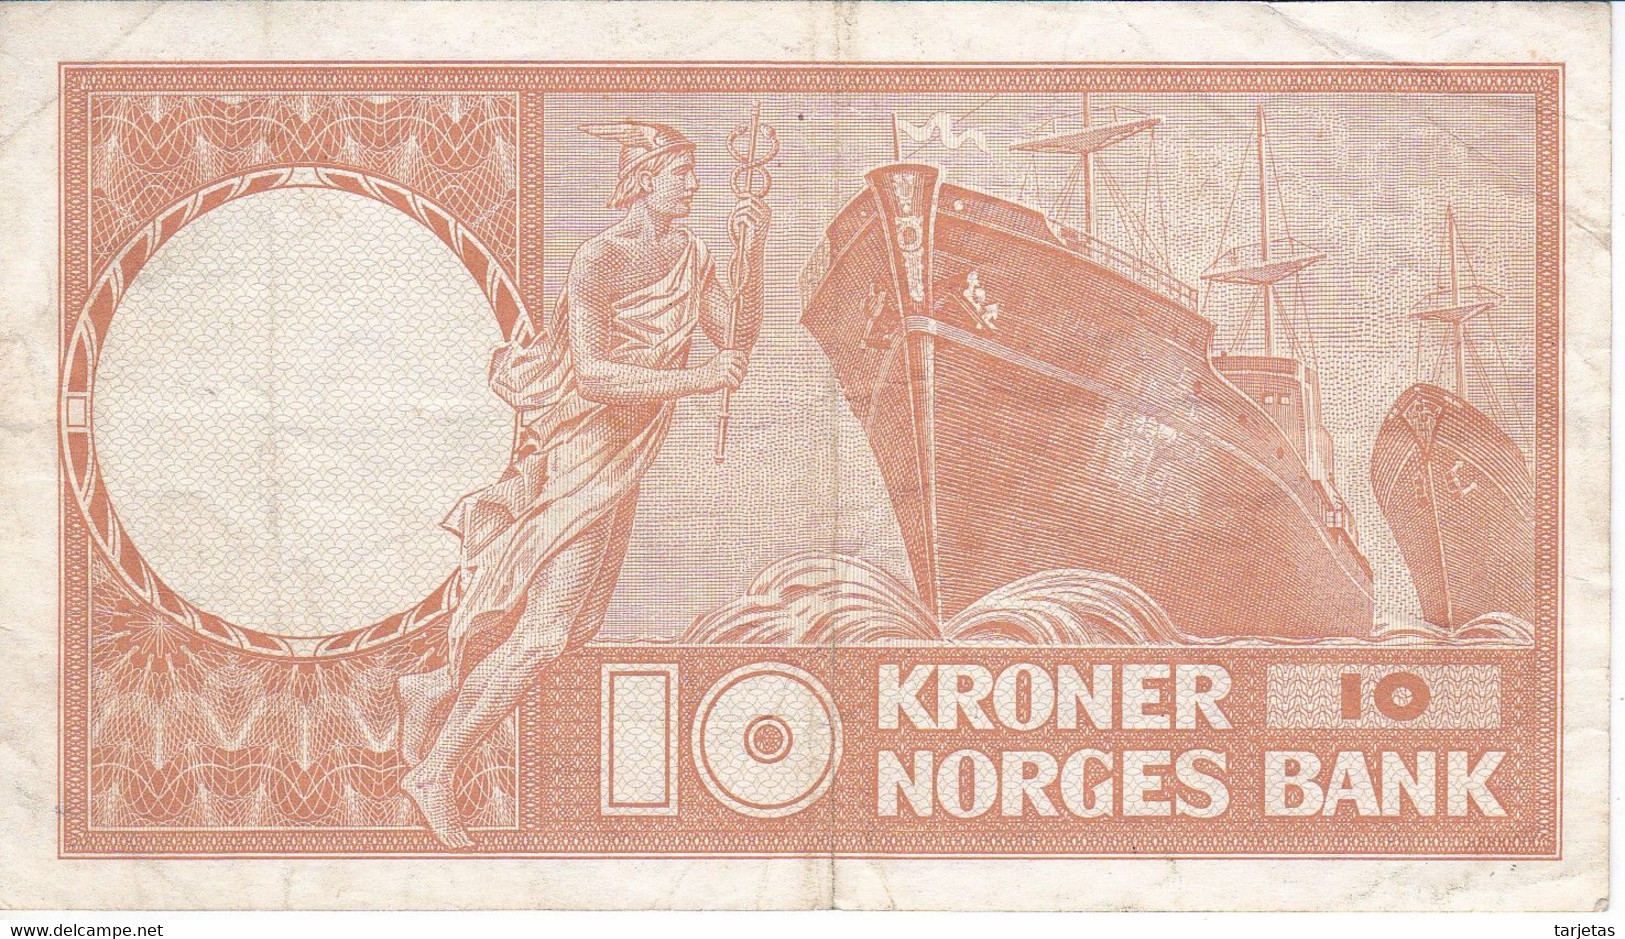 BILLETE DE NORUEGA DE 10 KRONER DEL AÑO 1967 (BANKNOTE) - Norway